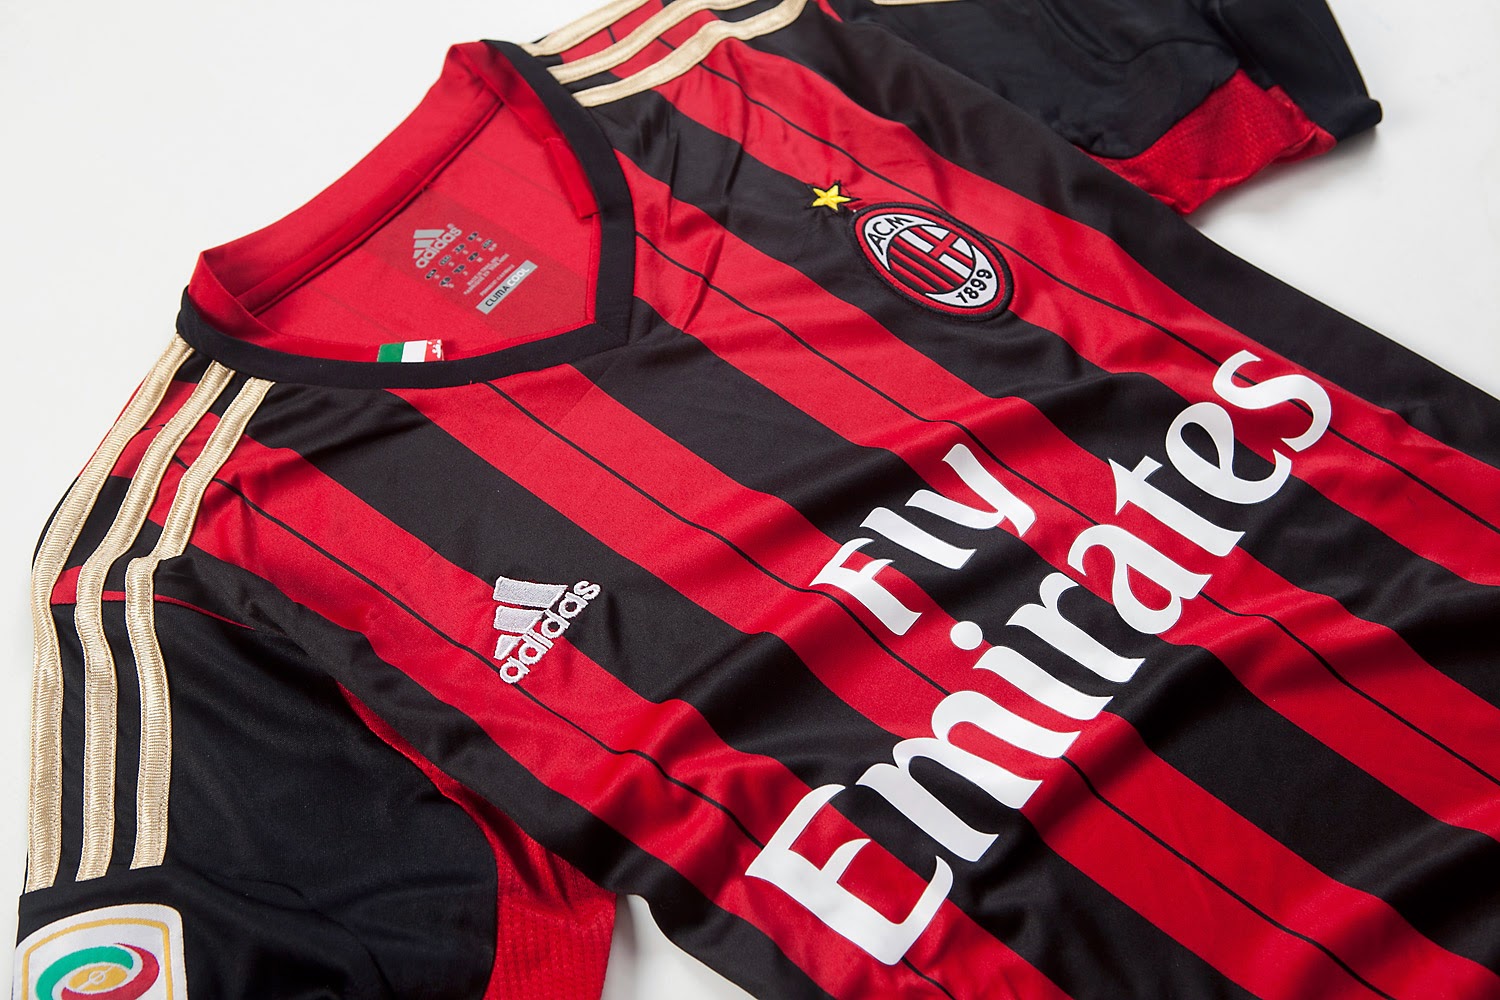 Equipaciones de futbol baratas 2015 online: nueva camisetas de futbol ac milan 2014 baratas